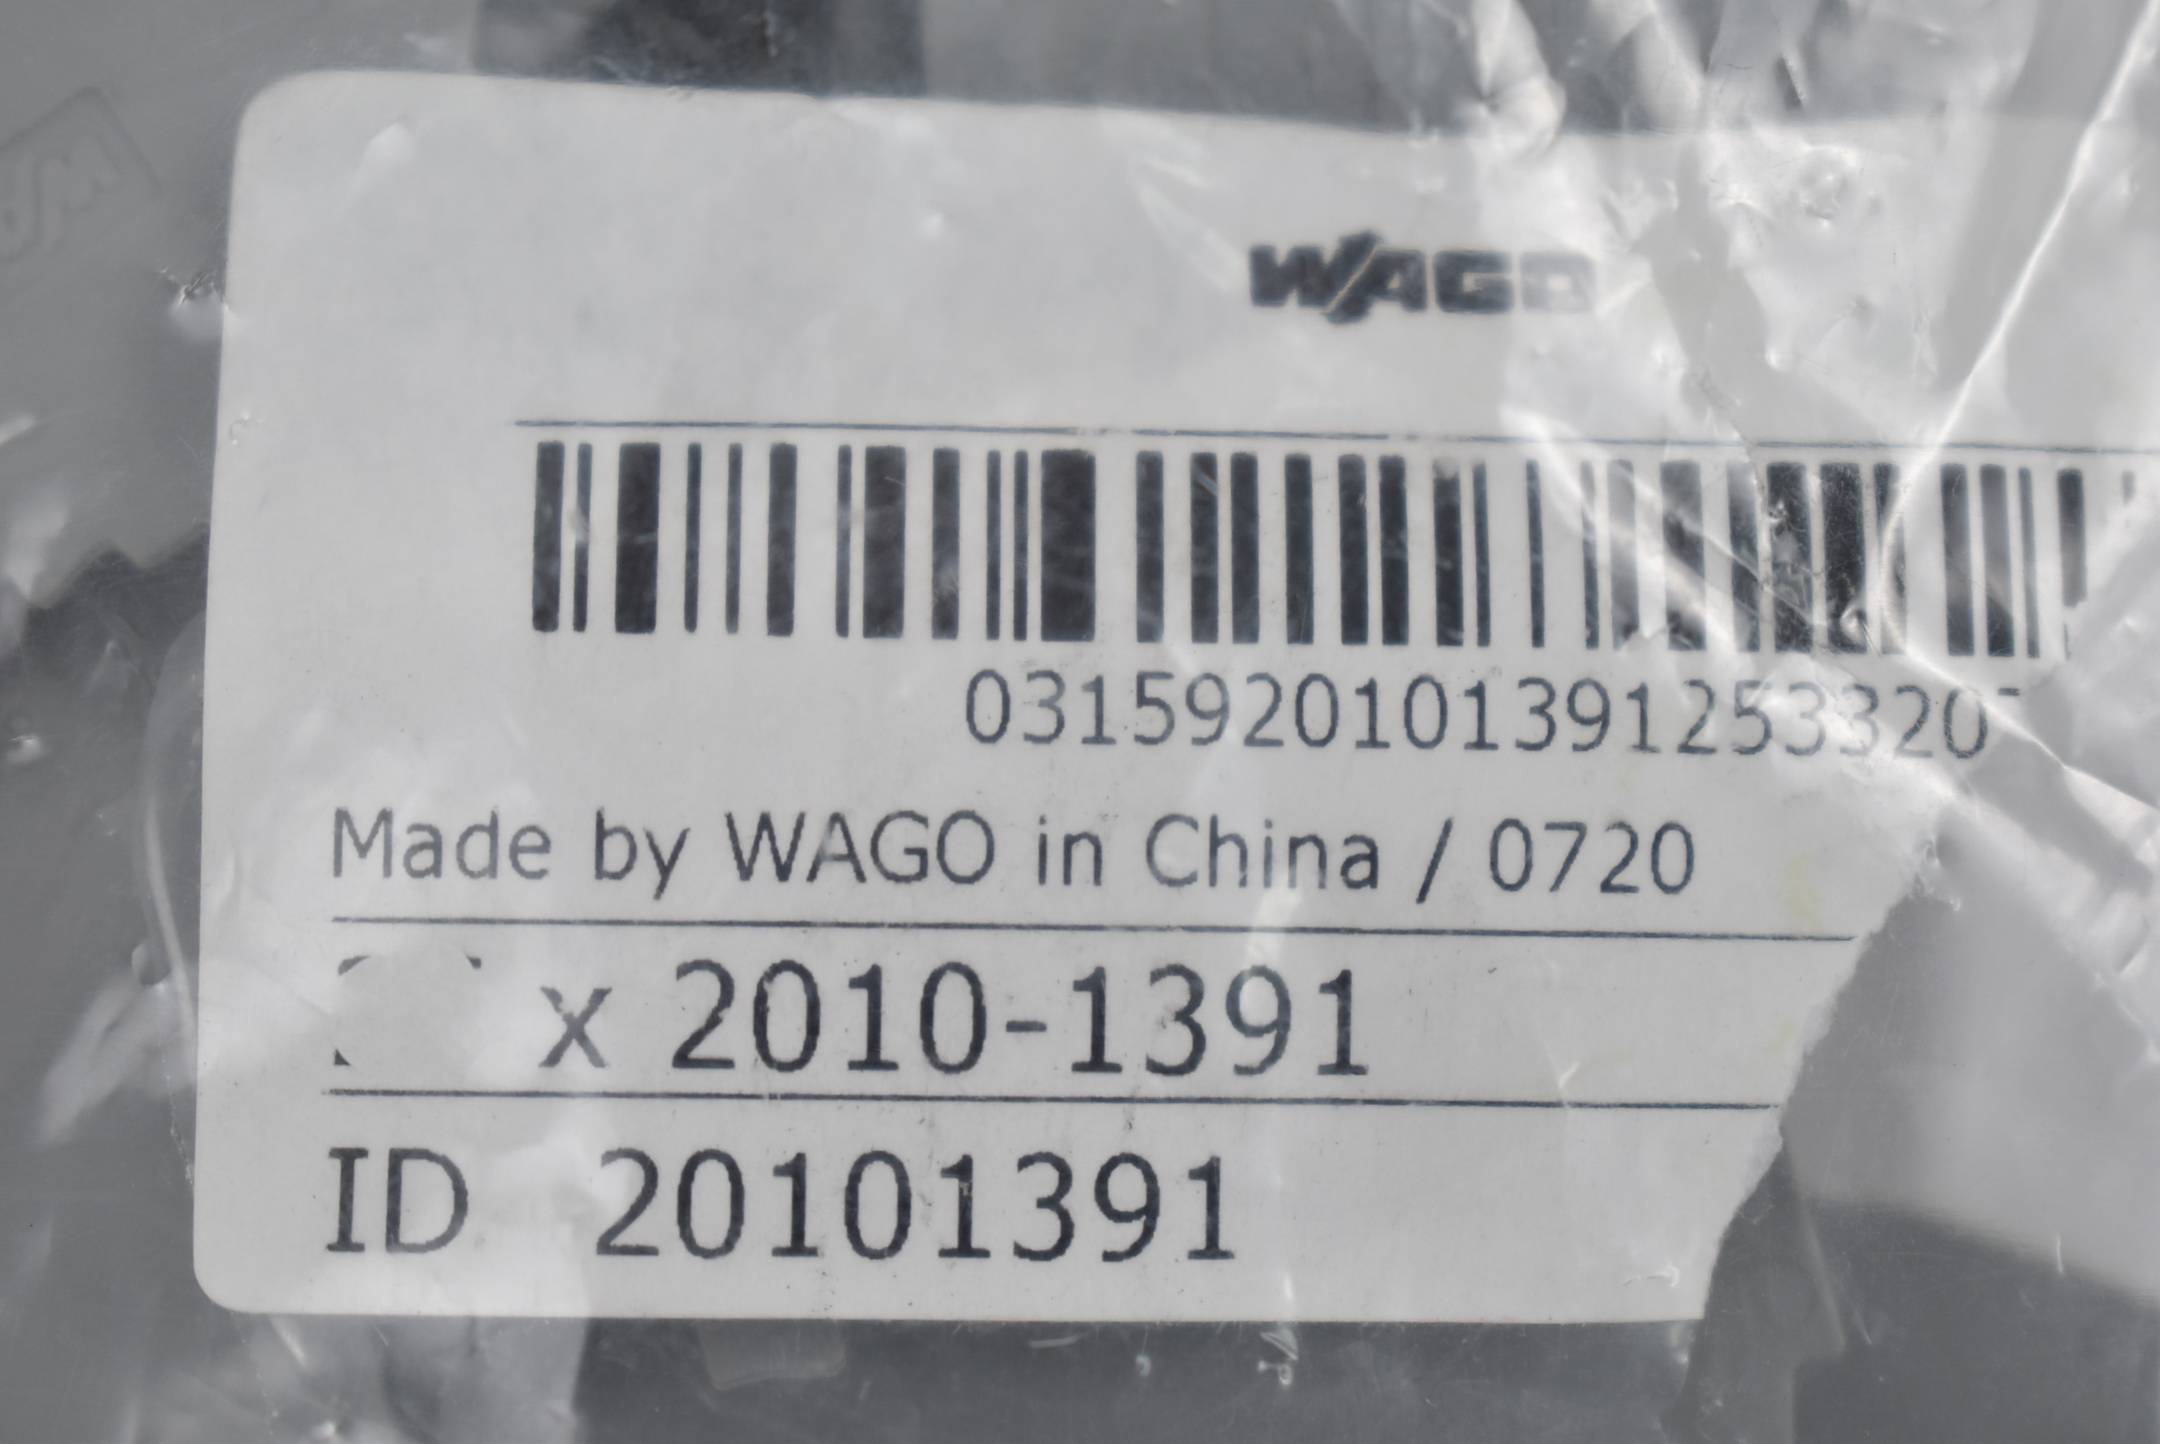 34x WAGO Abschlussplatte 2010-1391 ( 20101391 )